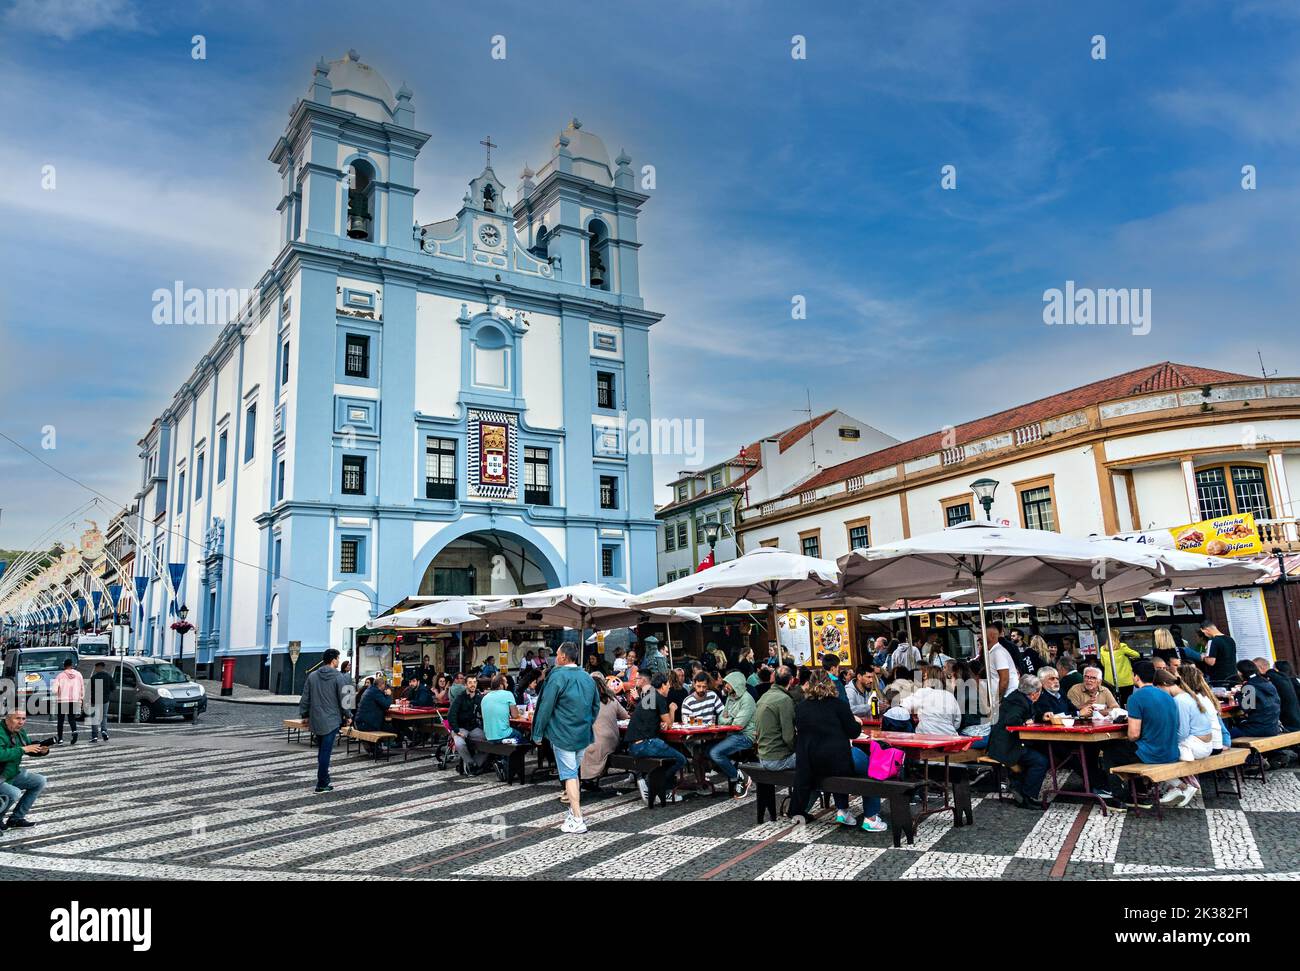 Cafeterías al aire libre a lo largo del paseo marítimo frente a la iglesia Igreja da Misericordia en el centro histórico de Angra do Heroismo, Isla Terceira, Azores, Portugal. Foto de stock